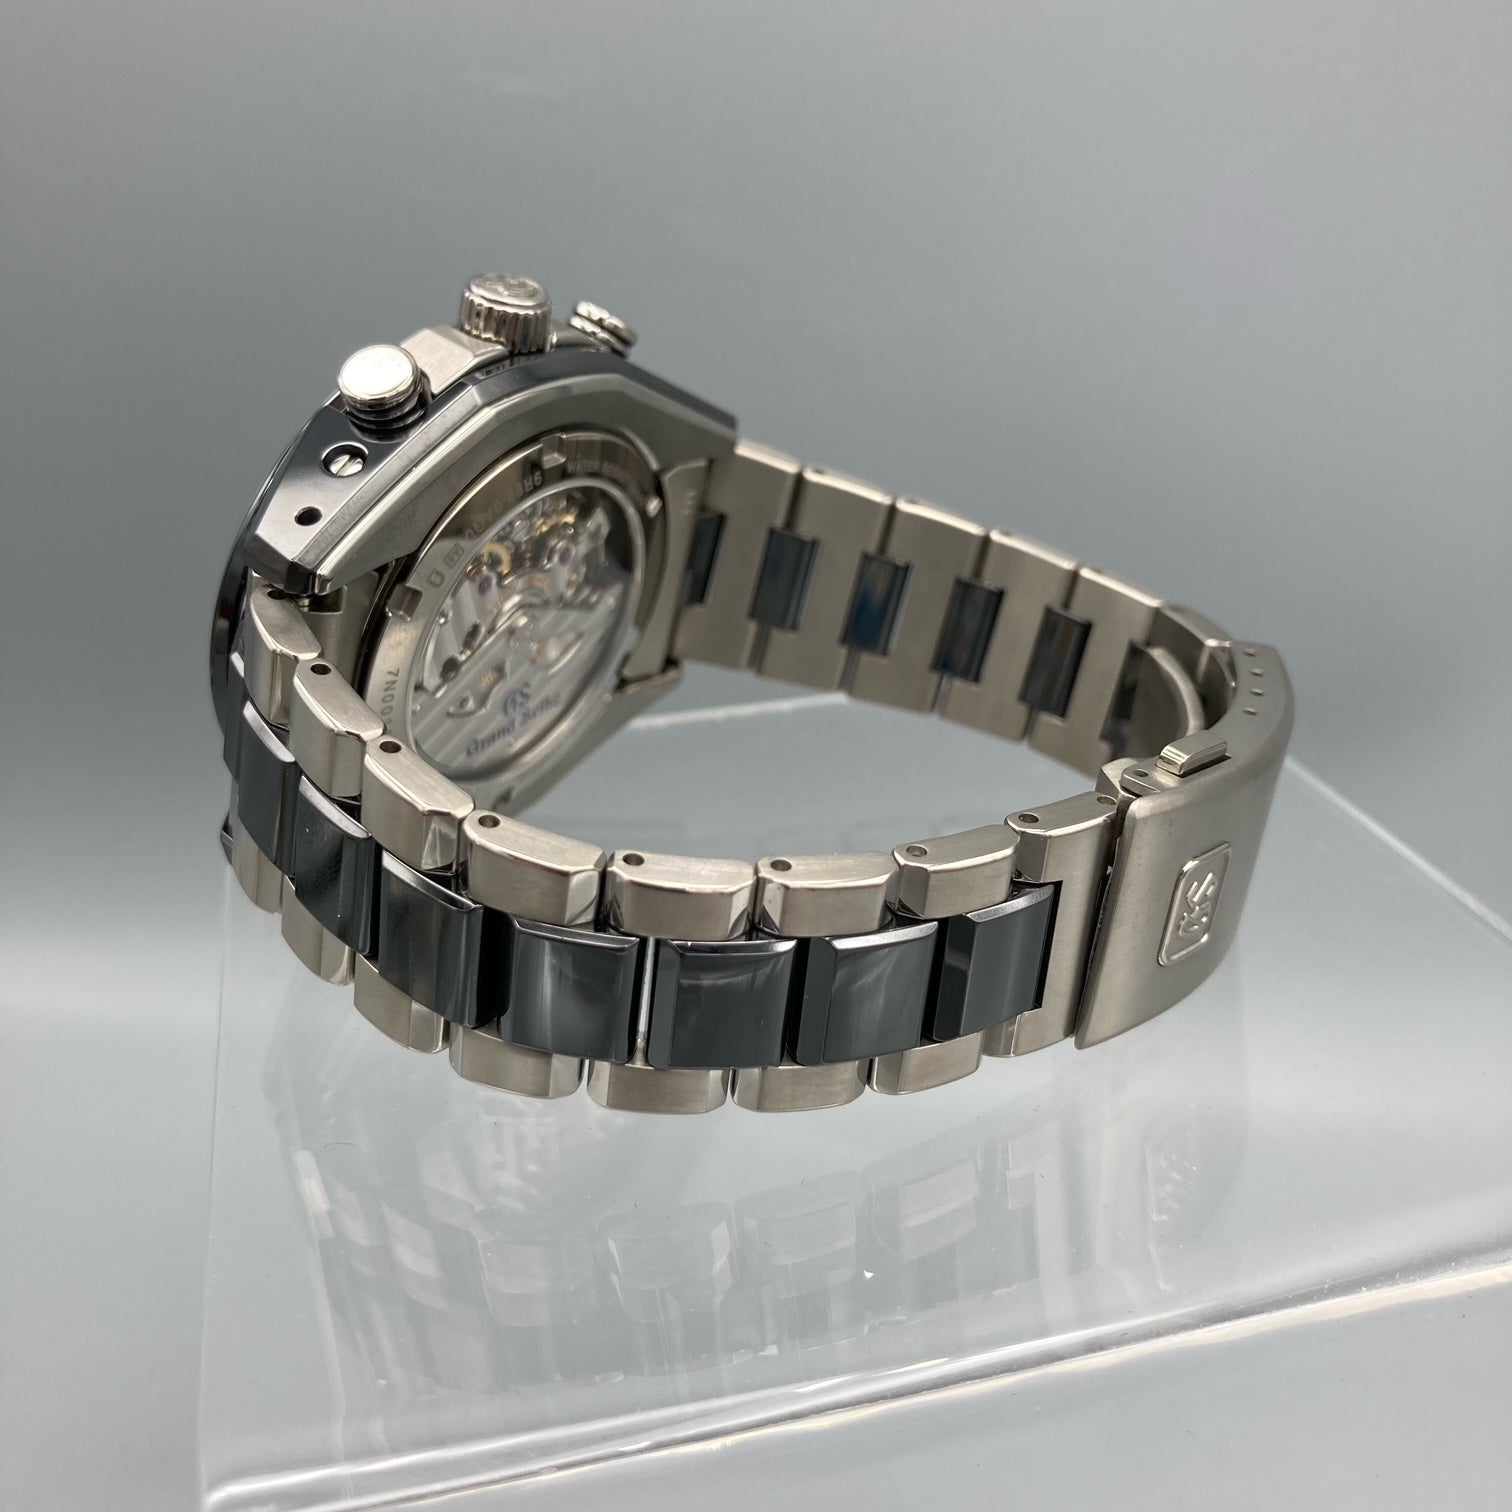 Montre Grand Seiko Chronographe Céramique GMT Cadran Noir - SBGC223